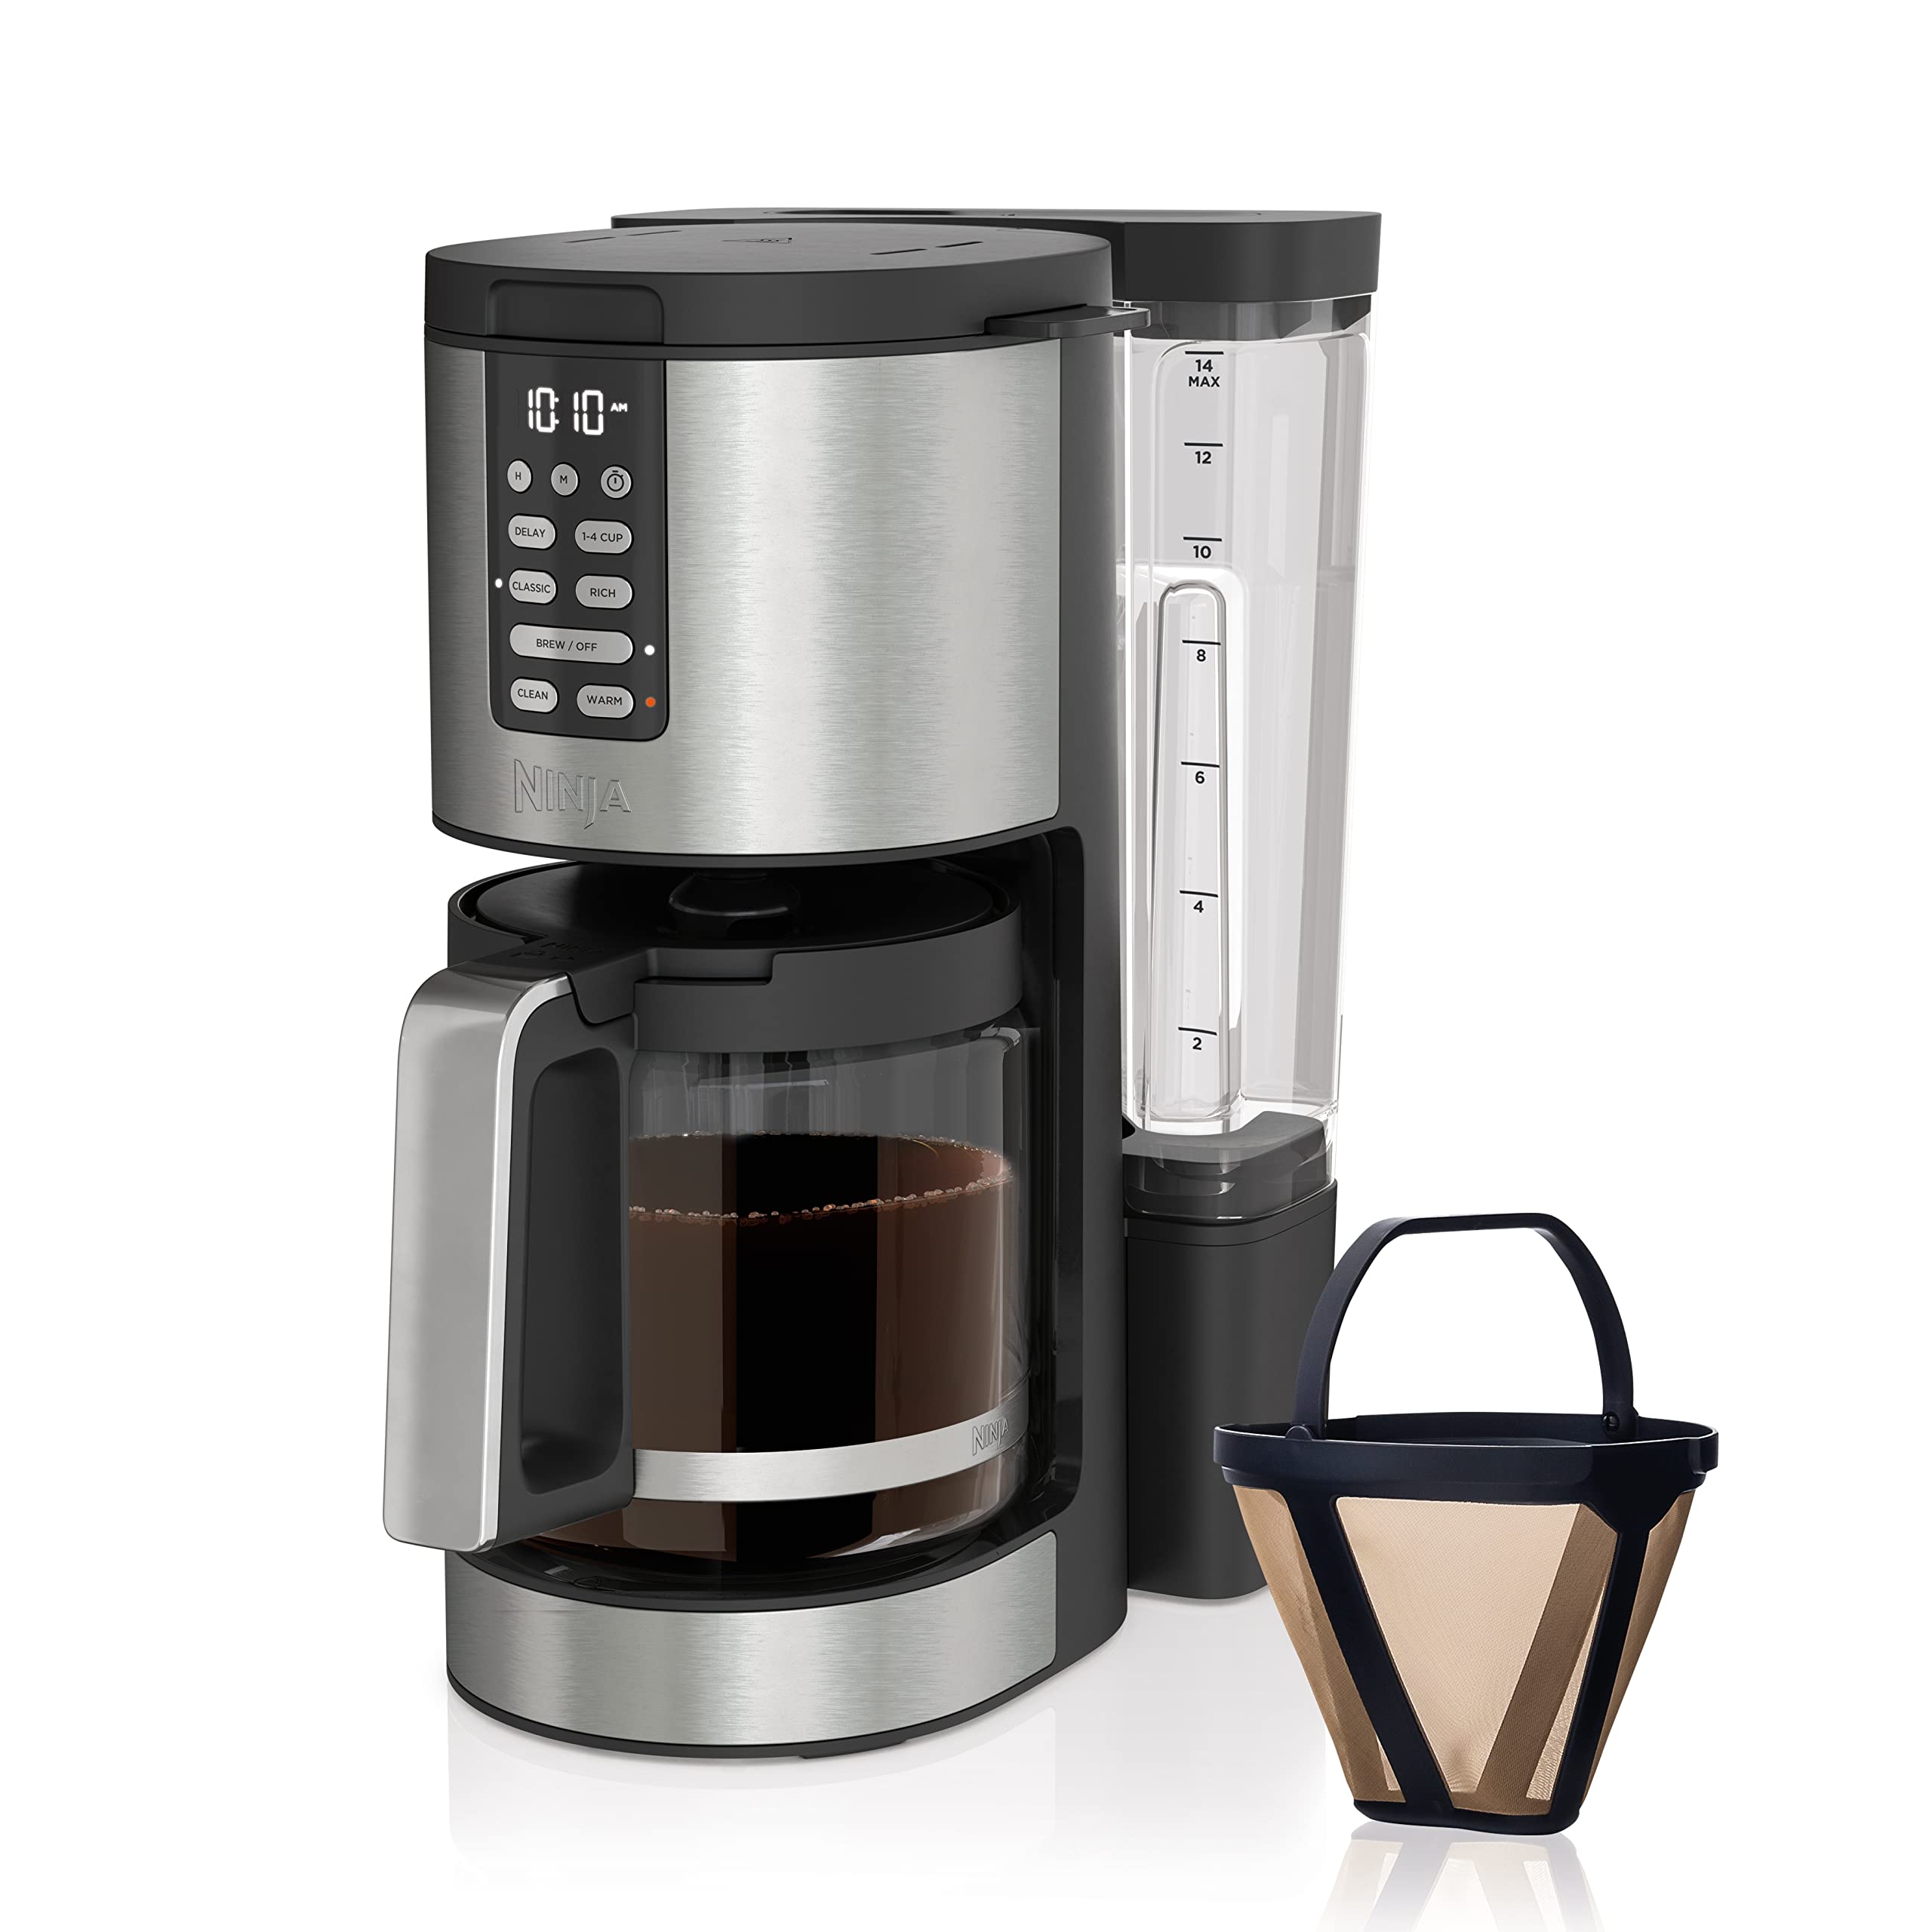 قهوه‌ساز 14 فنجانی Ninja DCM201، قهوه‌ساز قابل برنامه‌ریزی XL Pro با فیلتر دائمی، 2 سبک دم کردن کلاسیک و غنی، 4 برنامه دسته‌ای کوچک، دم‌کردن تاخیری، تایمر تازگی و گرم نگه داشتن، فولاد ضد زنگ